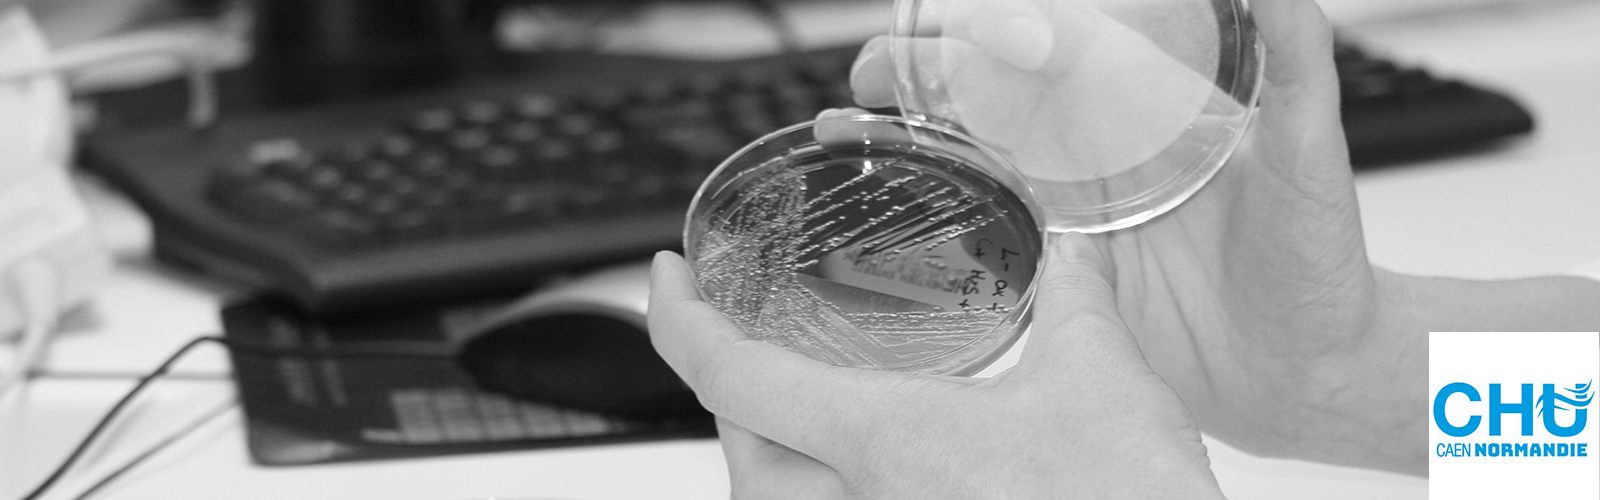 La Microbiologie sans papier au service d’une meilleure qualité, traçabilité et efficacité du laboratoire.